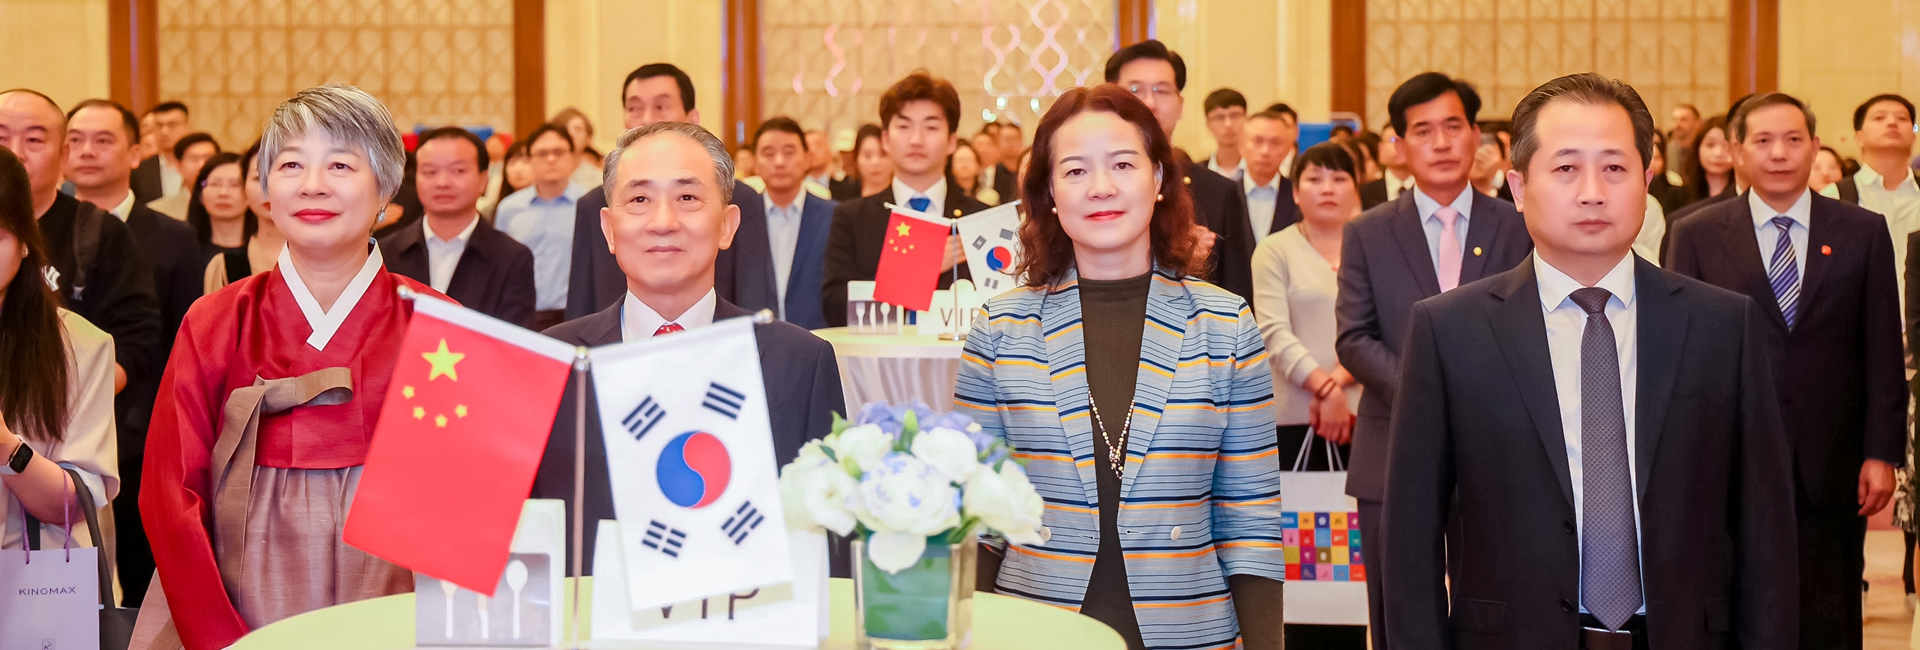 章笑梅主任出席韩国驻武汉总领事馆 举办的韩国国庆招待会